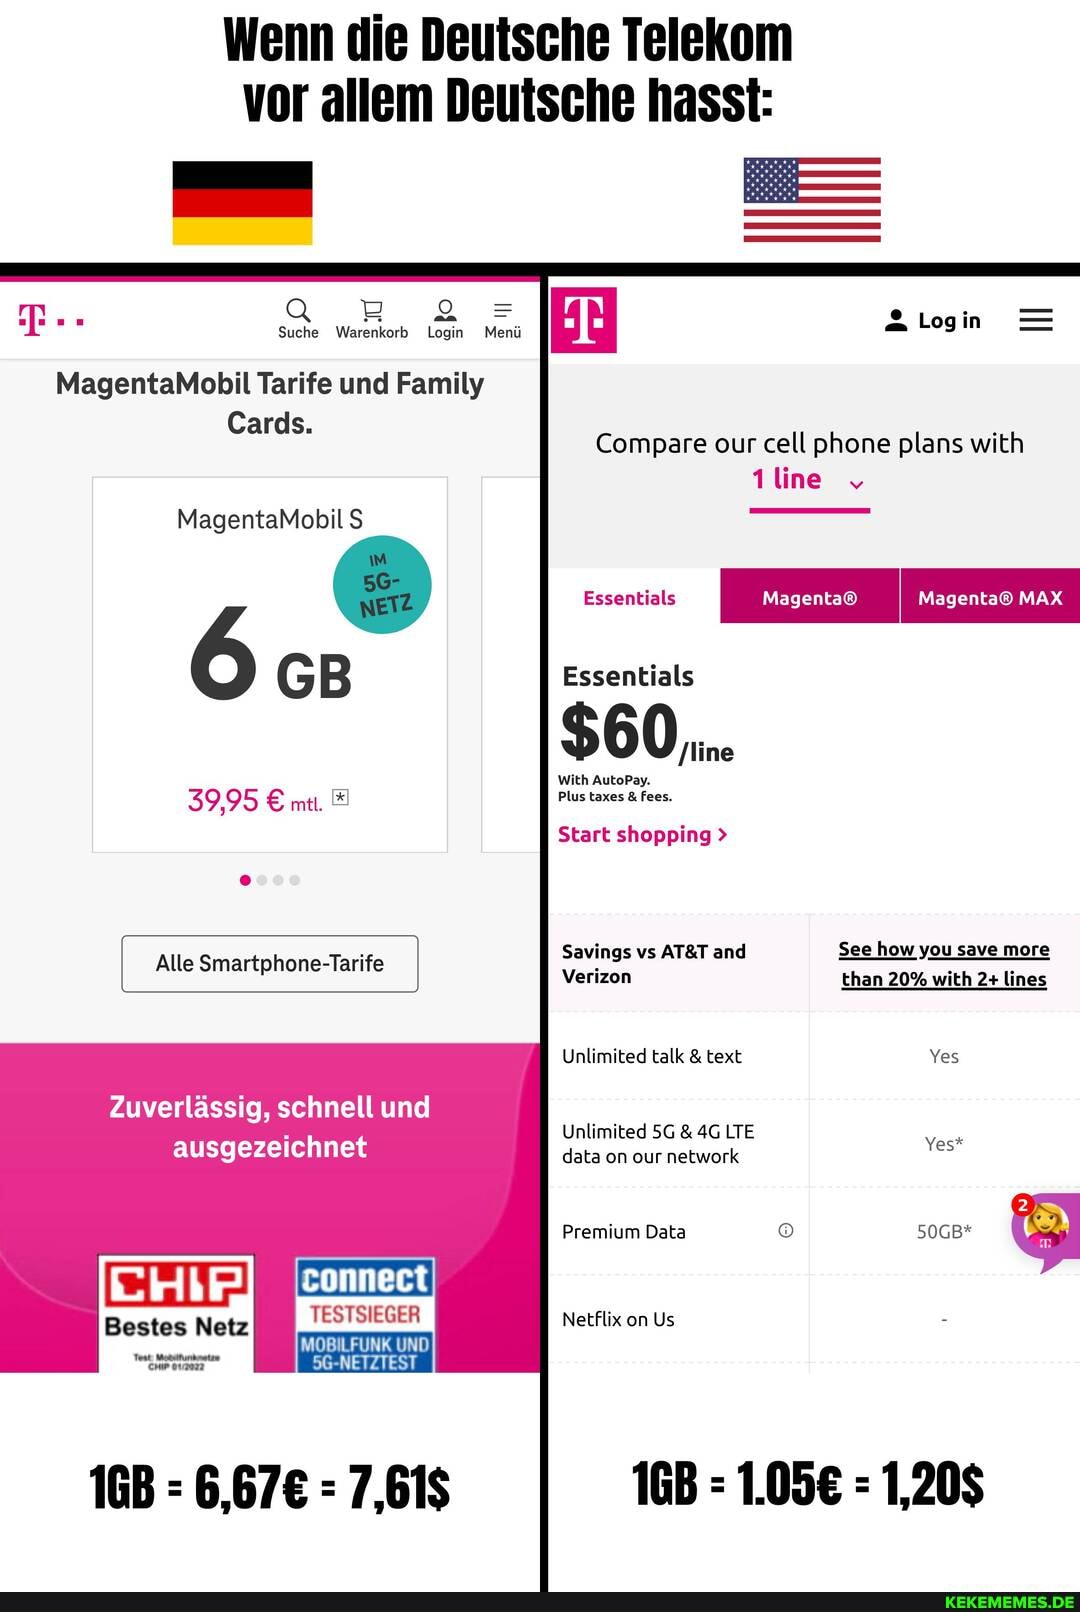 Wenn die Deutsche Telekom vor allem Deutsche hasst: Suche Warenkorb Login Menü 